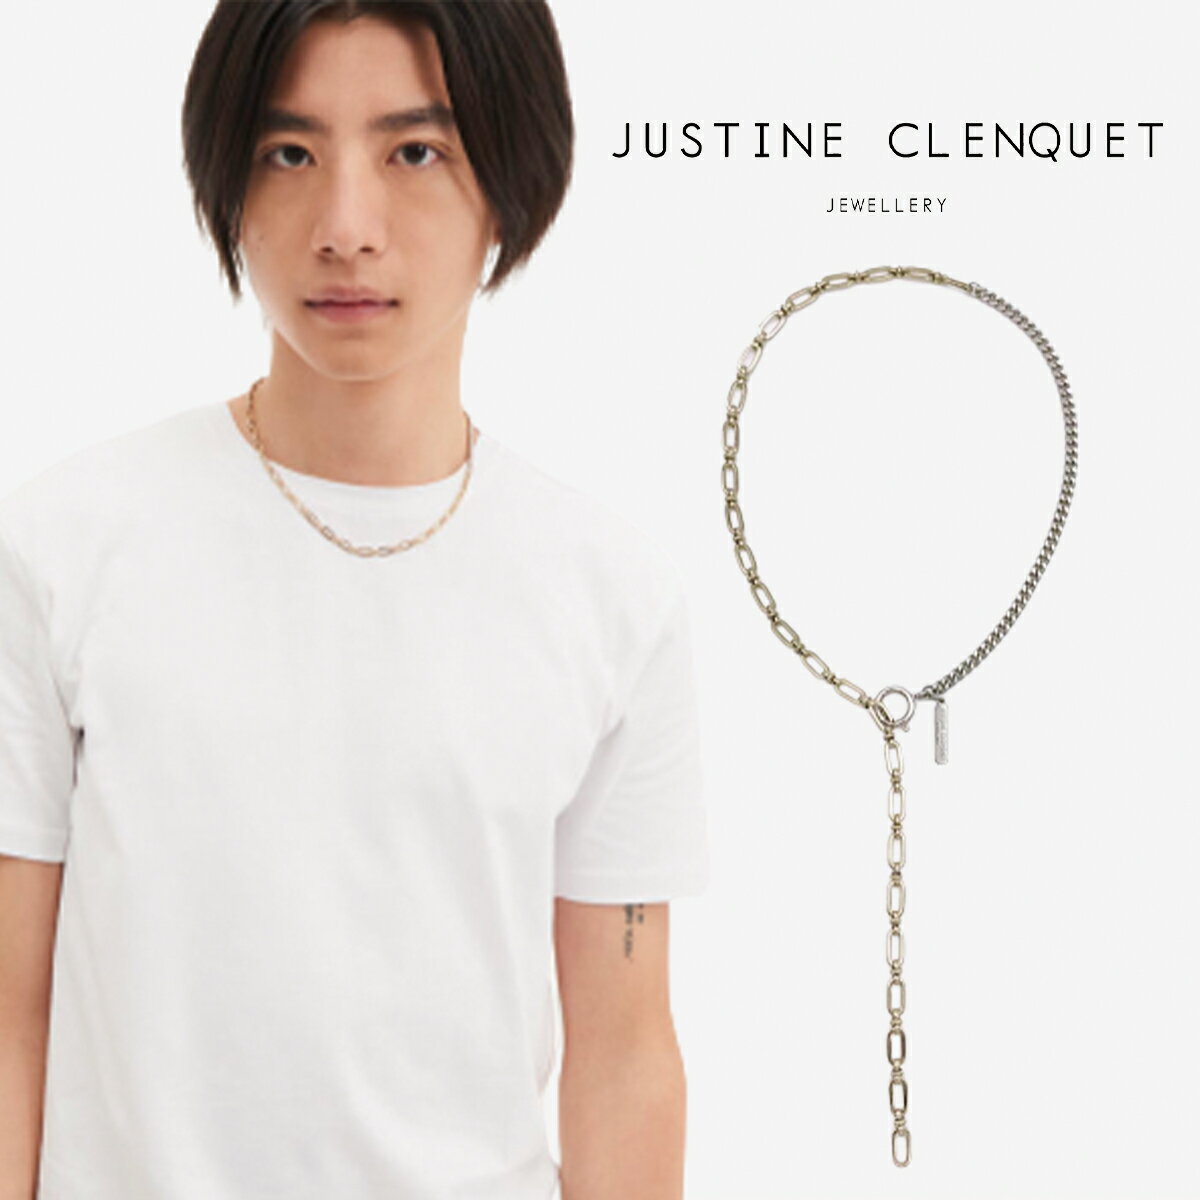 ジュスティーヌクランケ Justine Clenquet リンダ ネックレス Linda necklace チョーカー パラジウム レディース メンズ アクセサリー